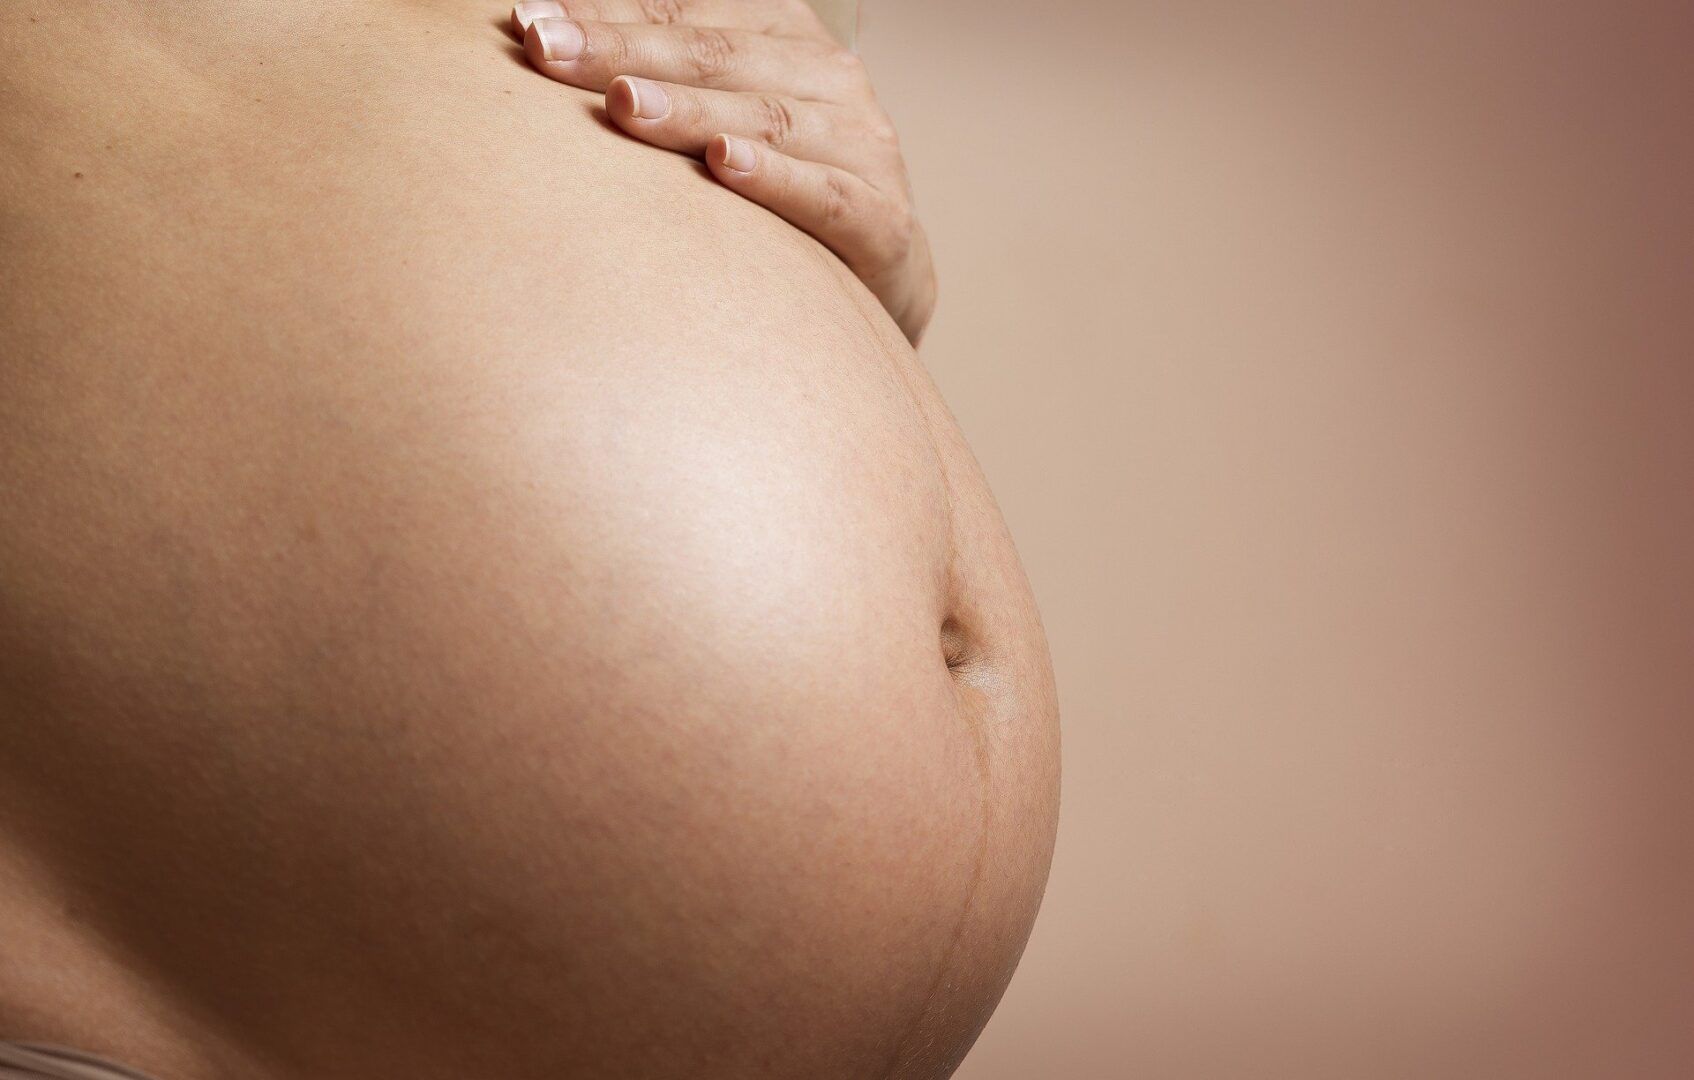 remedios que gravida nao pode tomar veja as categorias de risco 4 - Medicamentos que las mujeres embarazadas no pueden tomar: categorías de riesgo